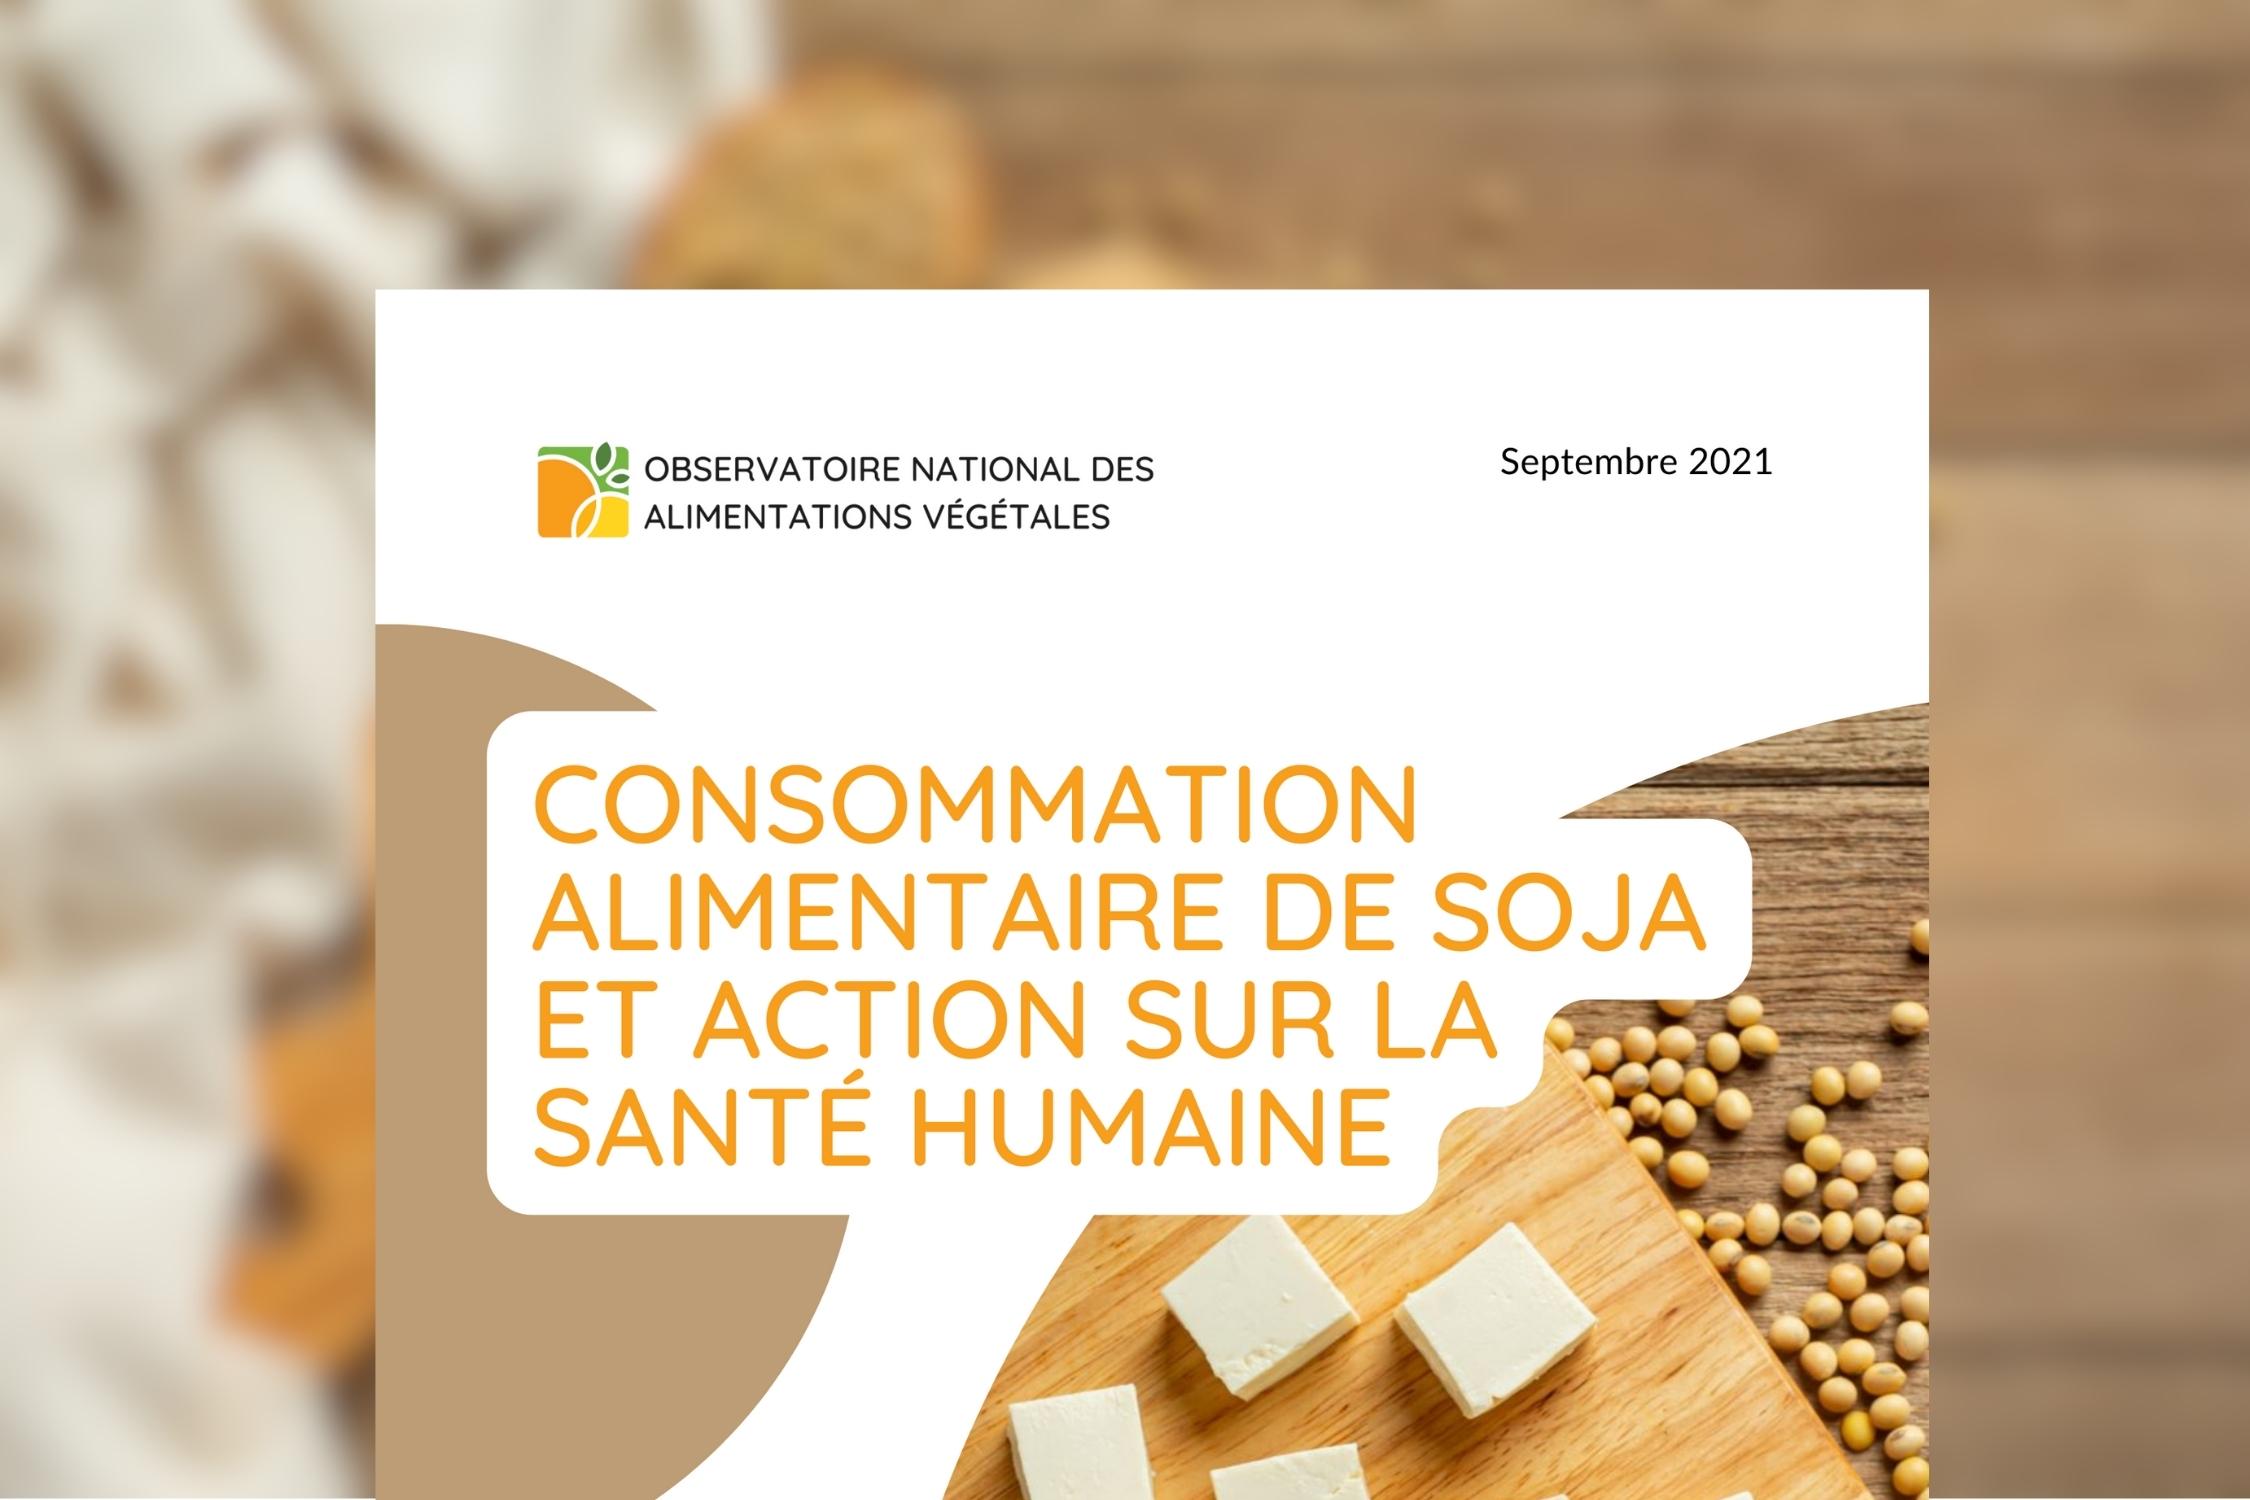 Quantité maximale journalière de soja recommandée par l'Anses : raisons et  conséquences en pratique - Observatoire national des alimentations végétales